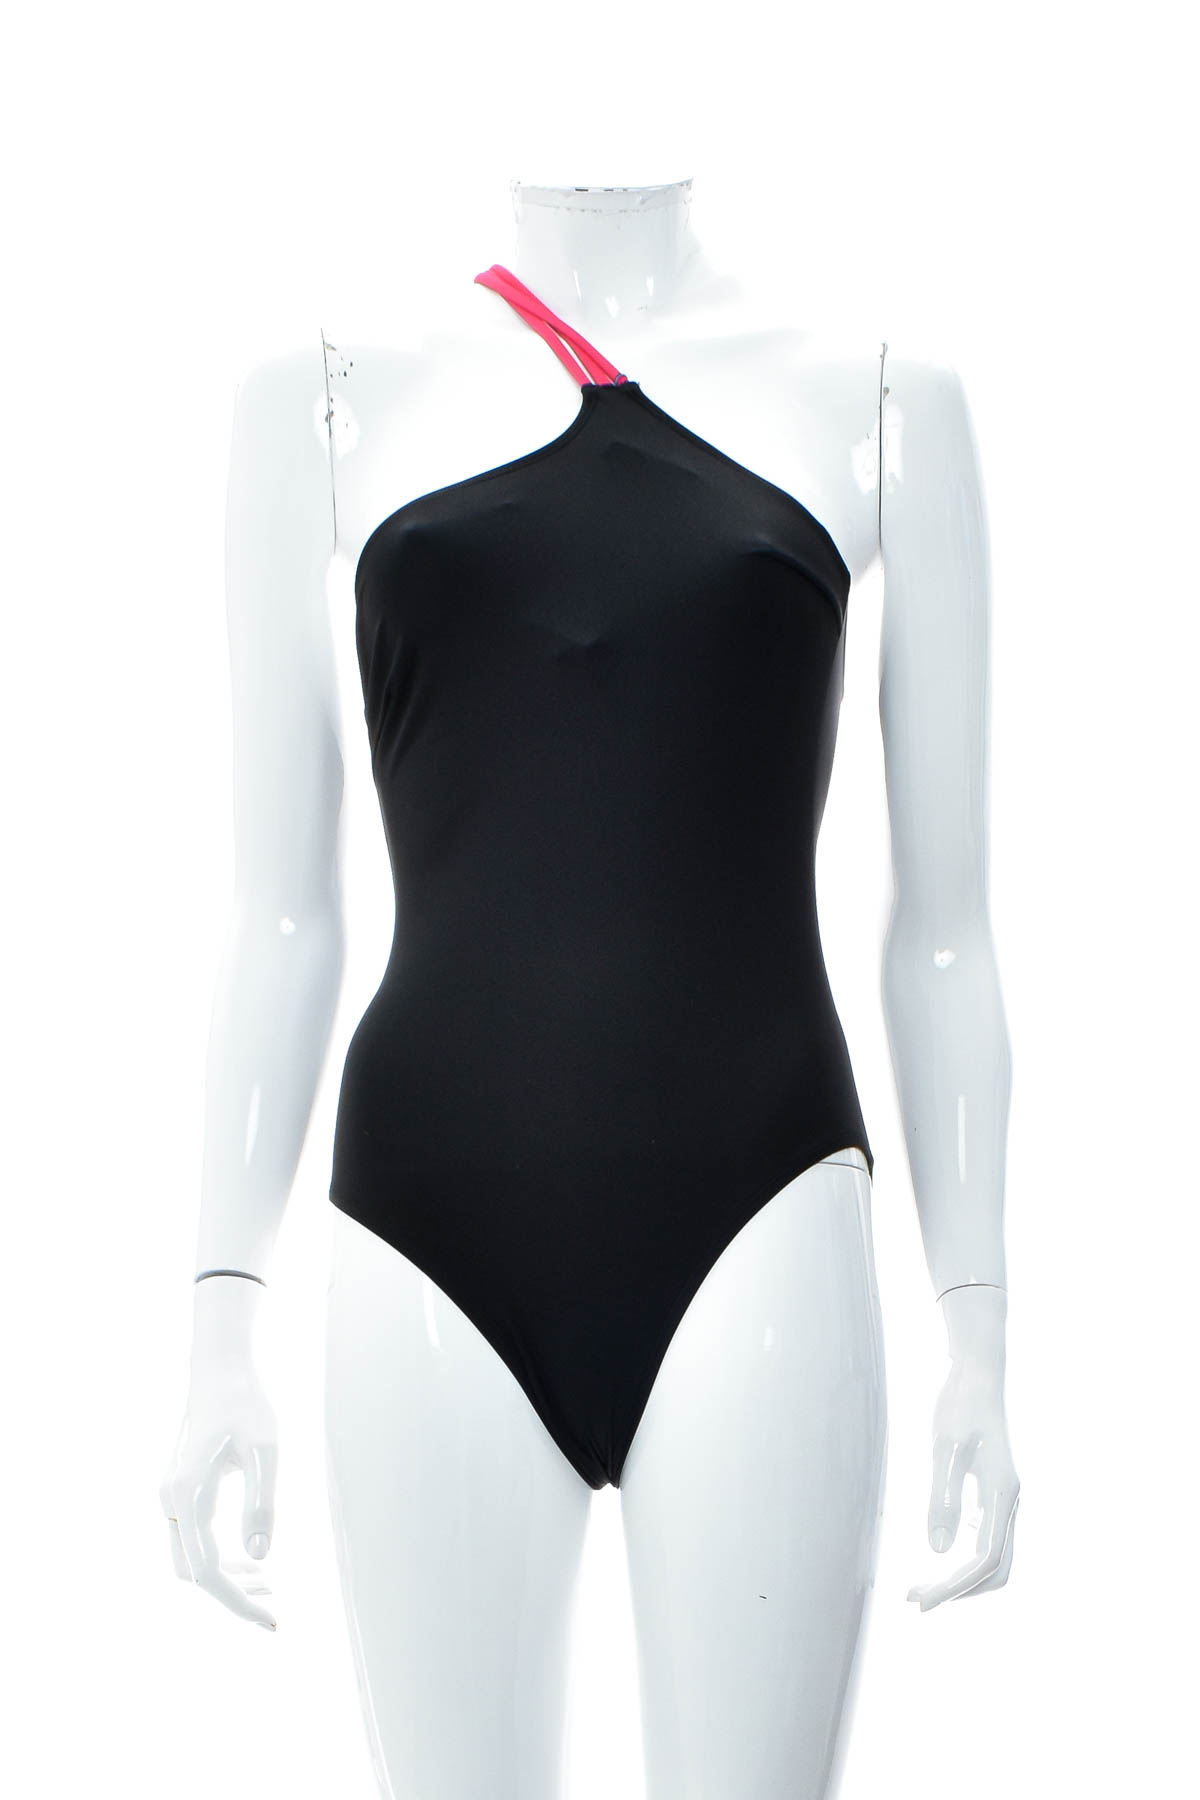 Women's swimsuit - Twintip - 0